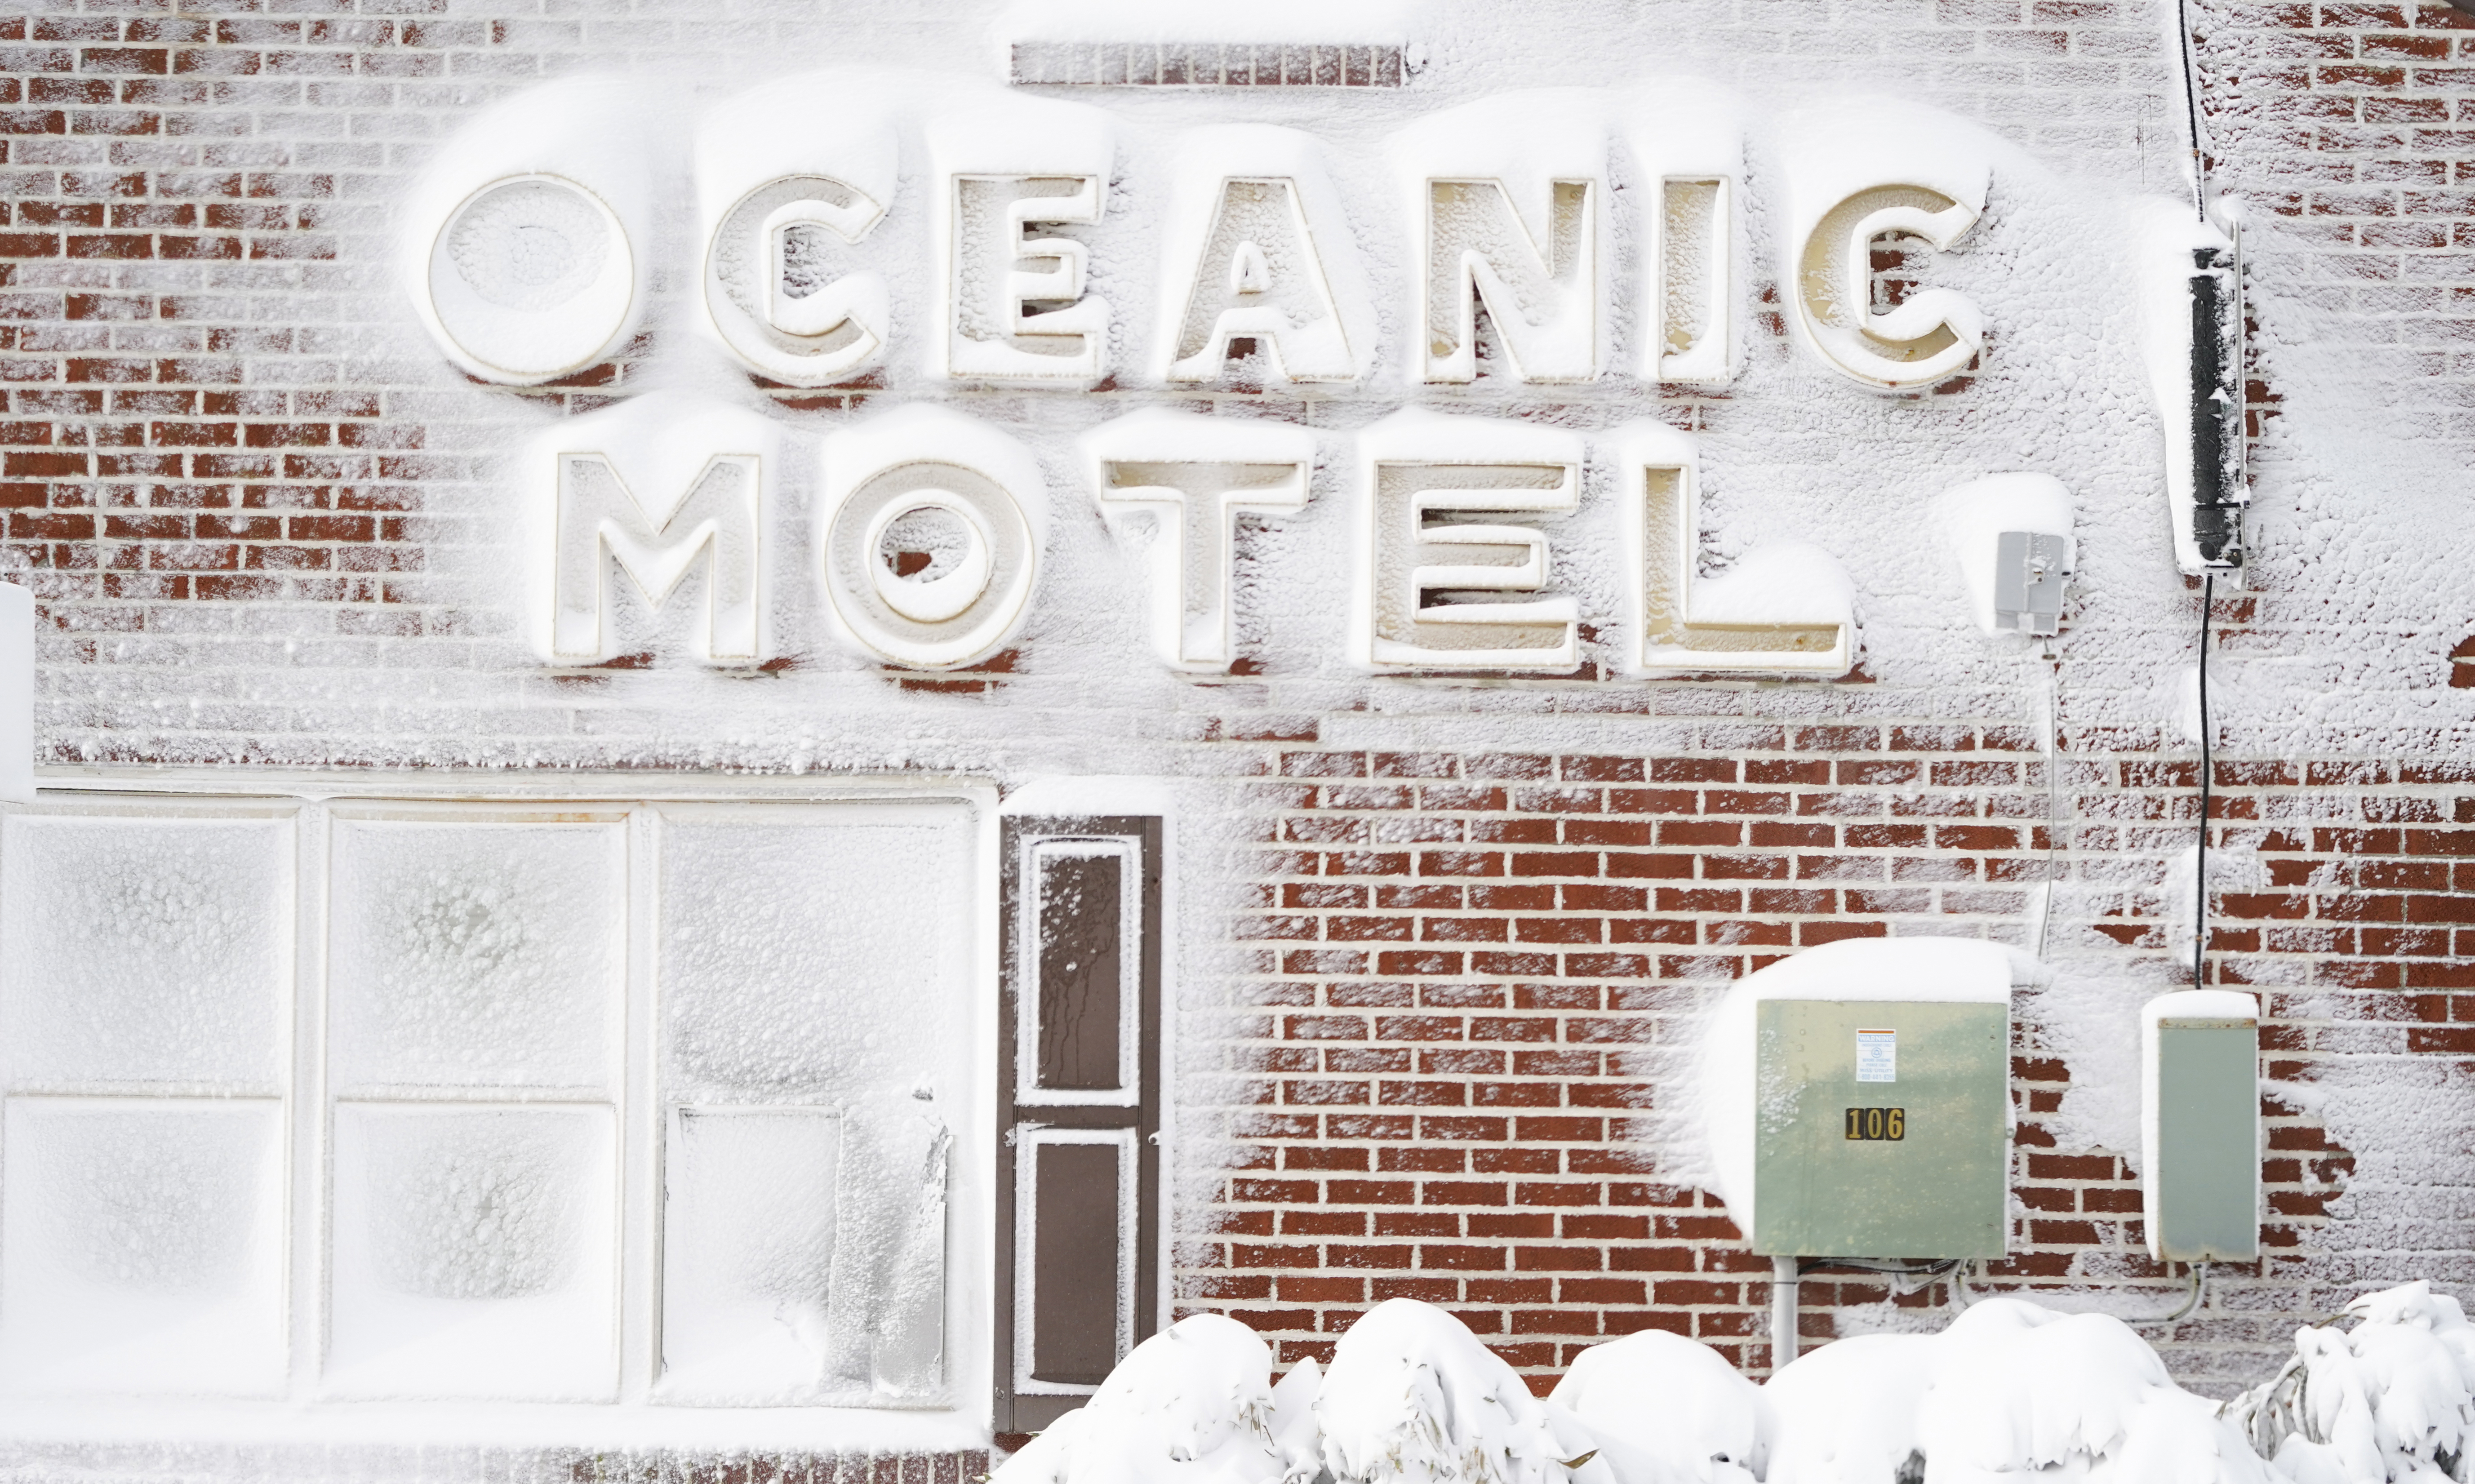 A snowy motel.